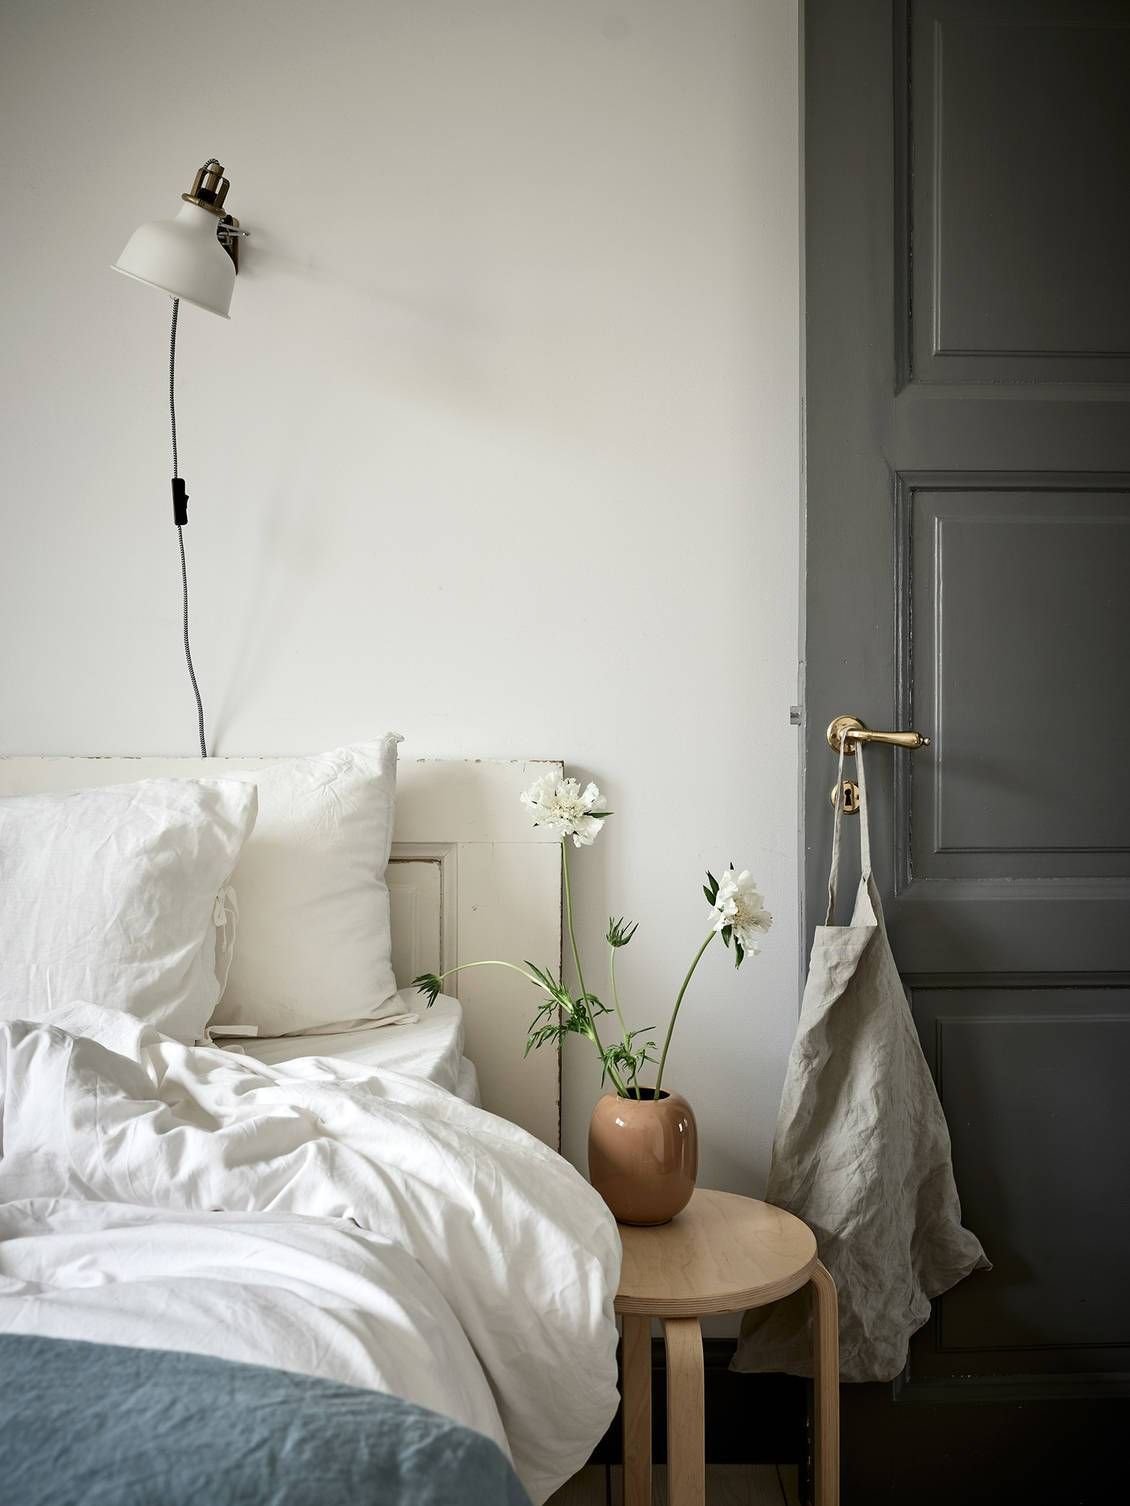 Dormitorio con cabecero de estilo rustico. En la cabeza